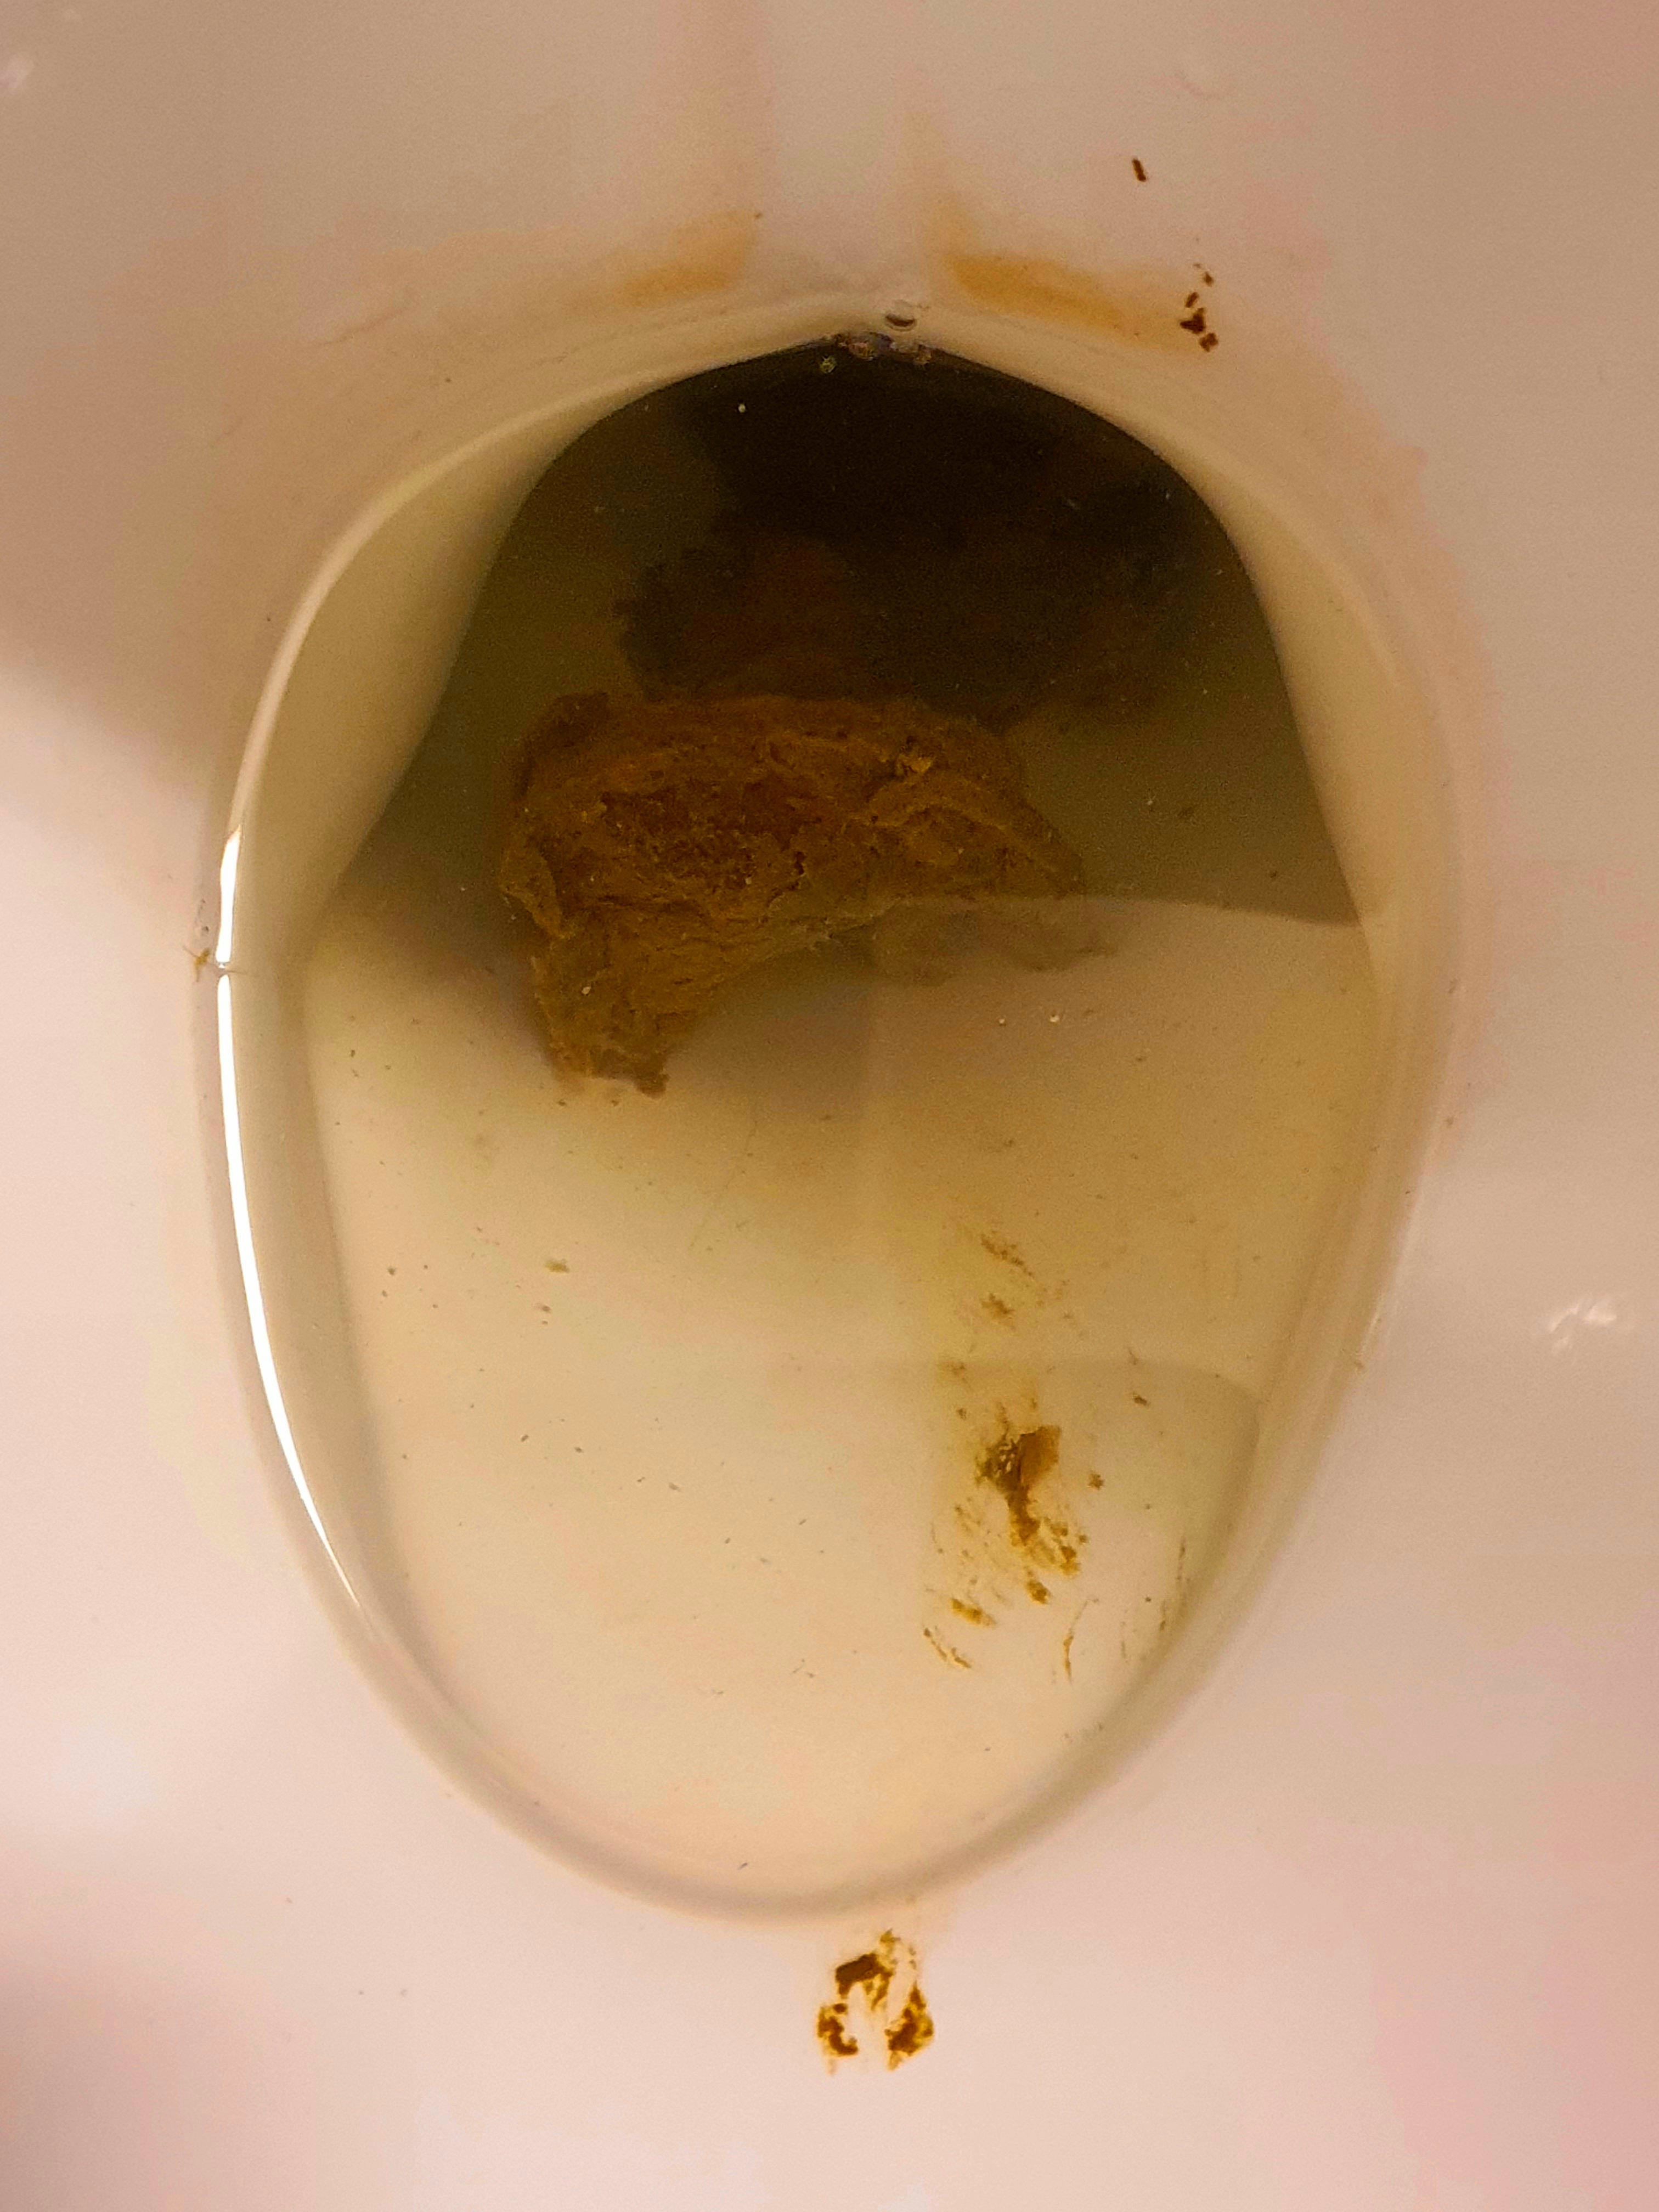 More poop post-work.